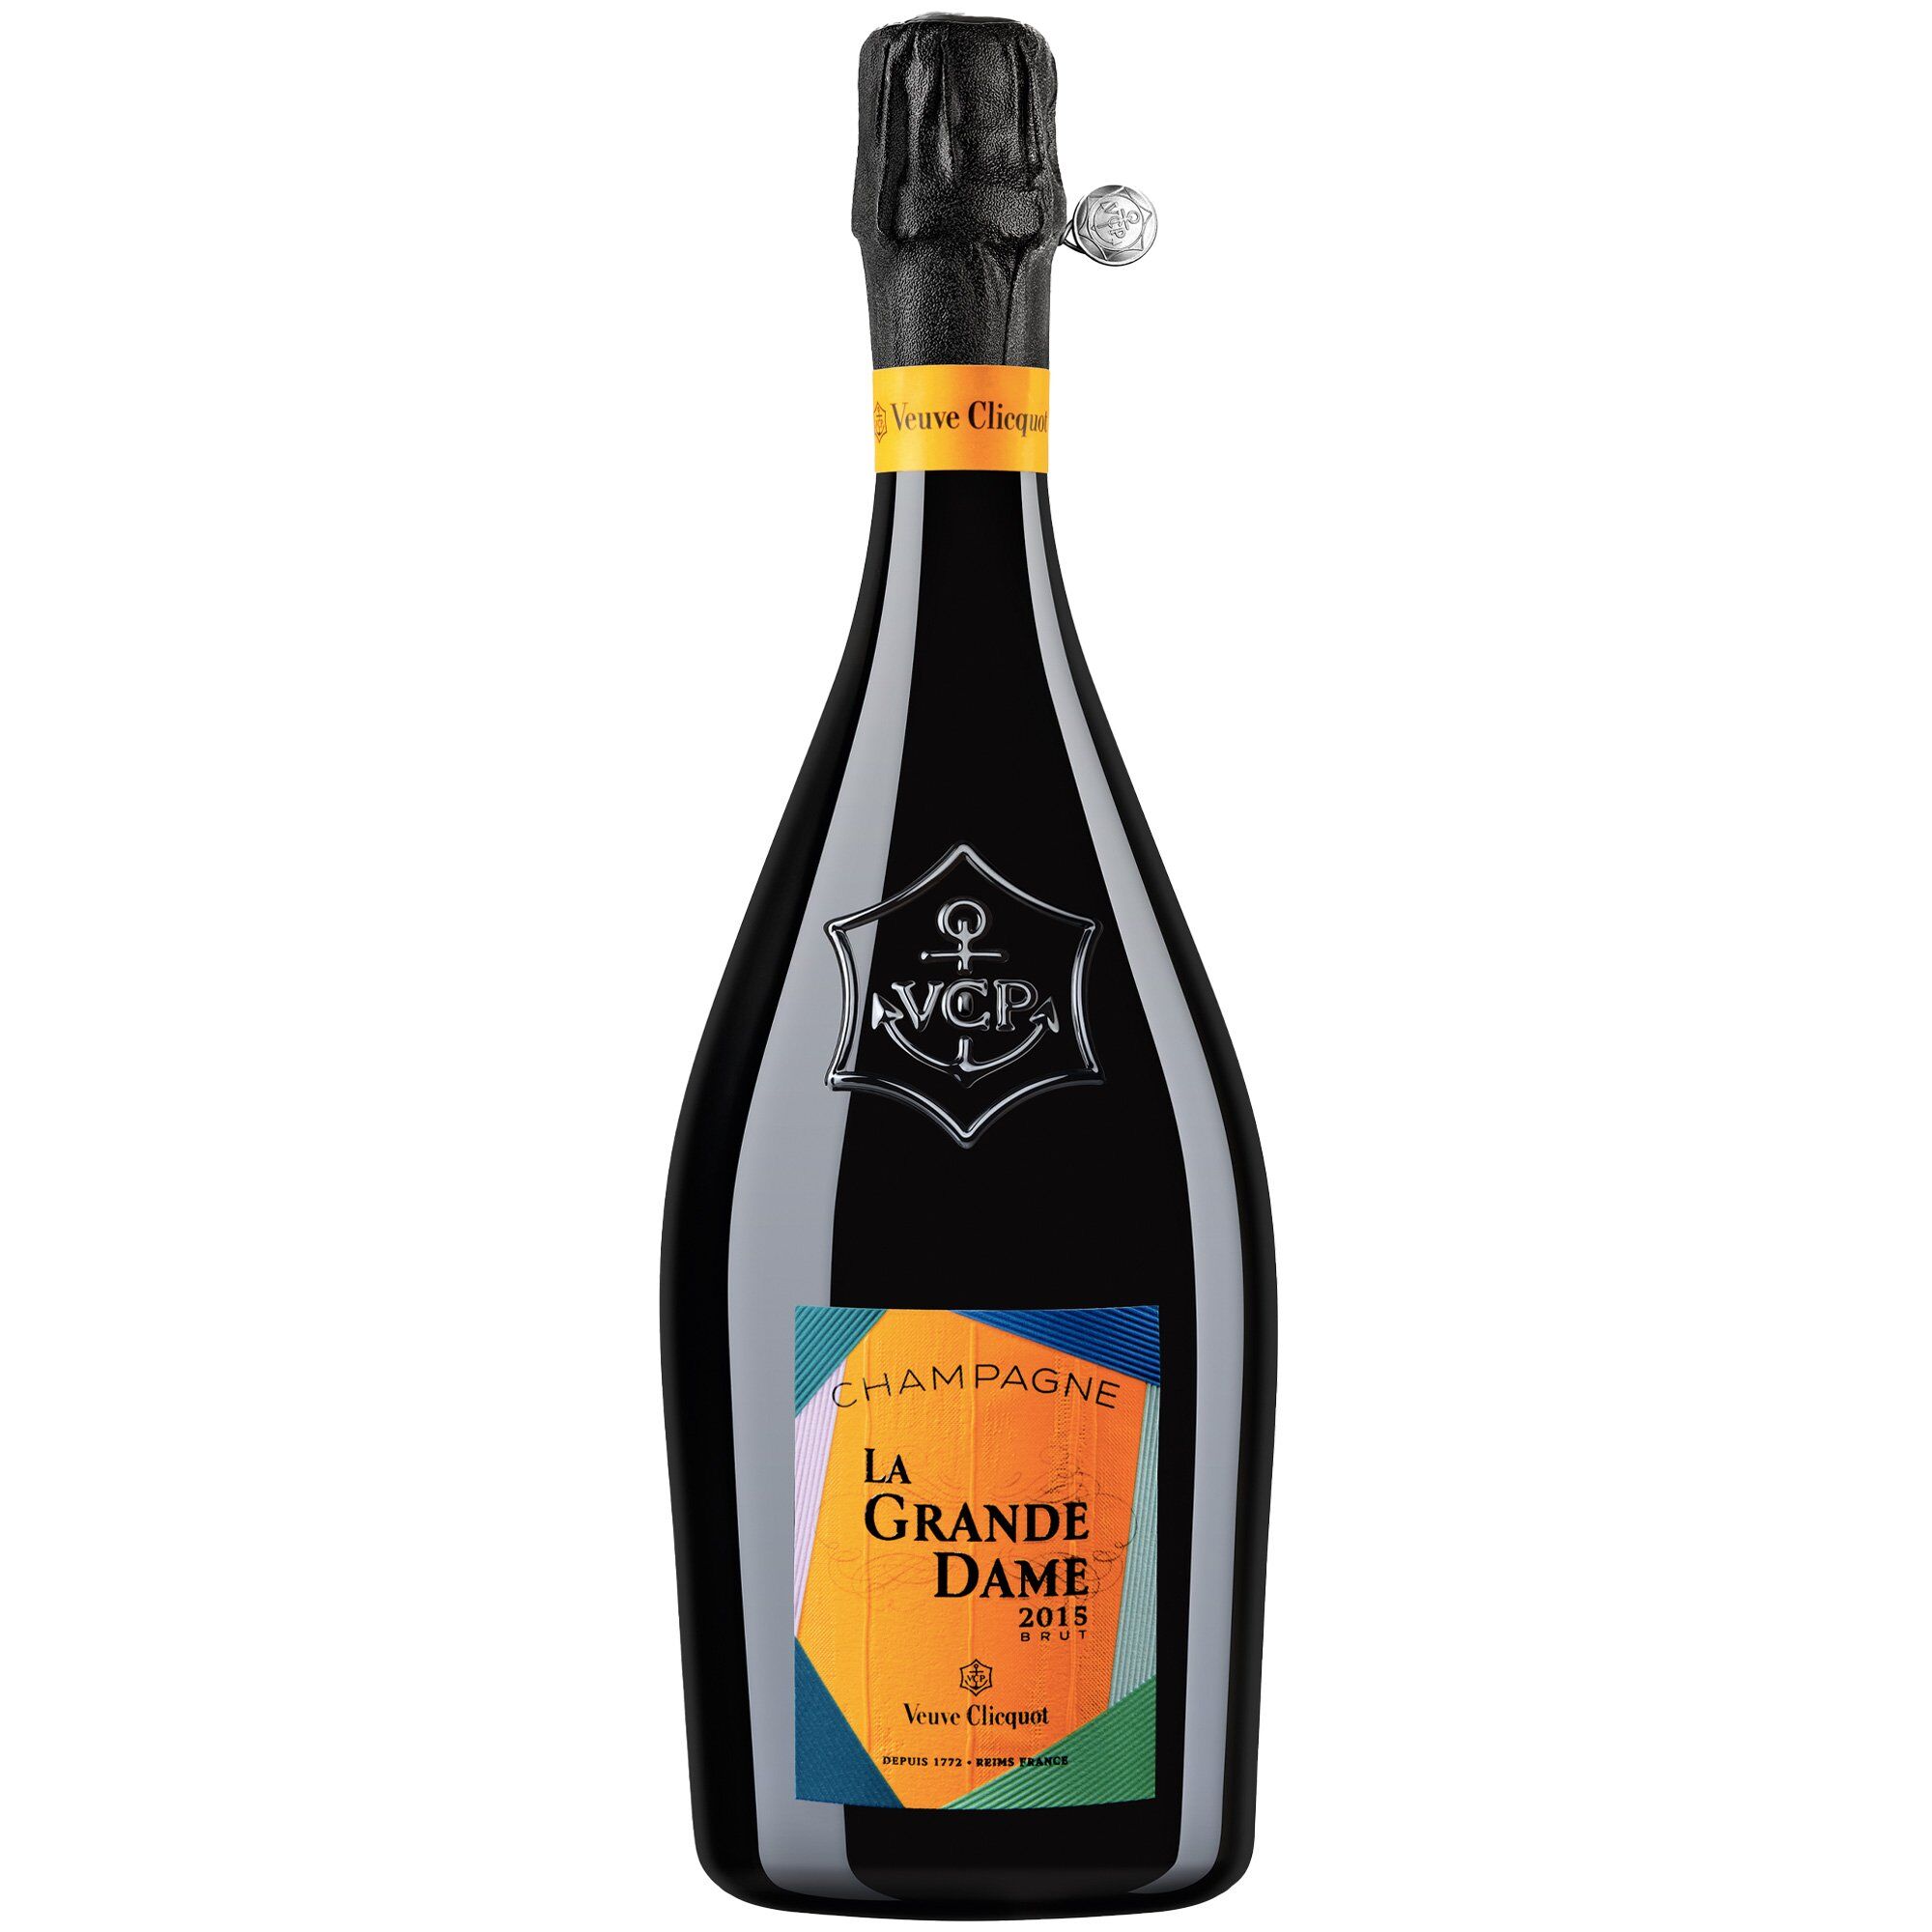 Veuve Clicquot Champagne Brut La Grande Dame 2015 X Paola Paronetto